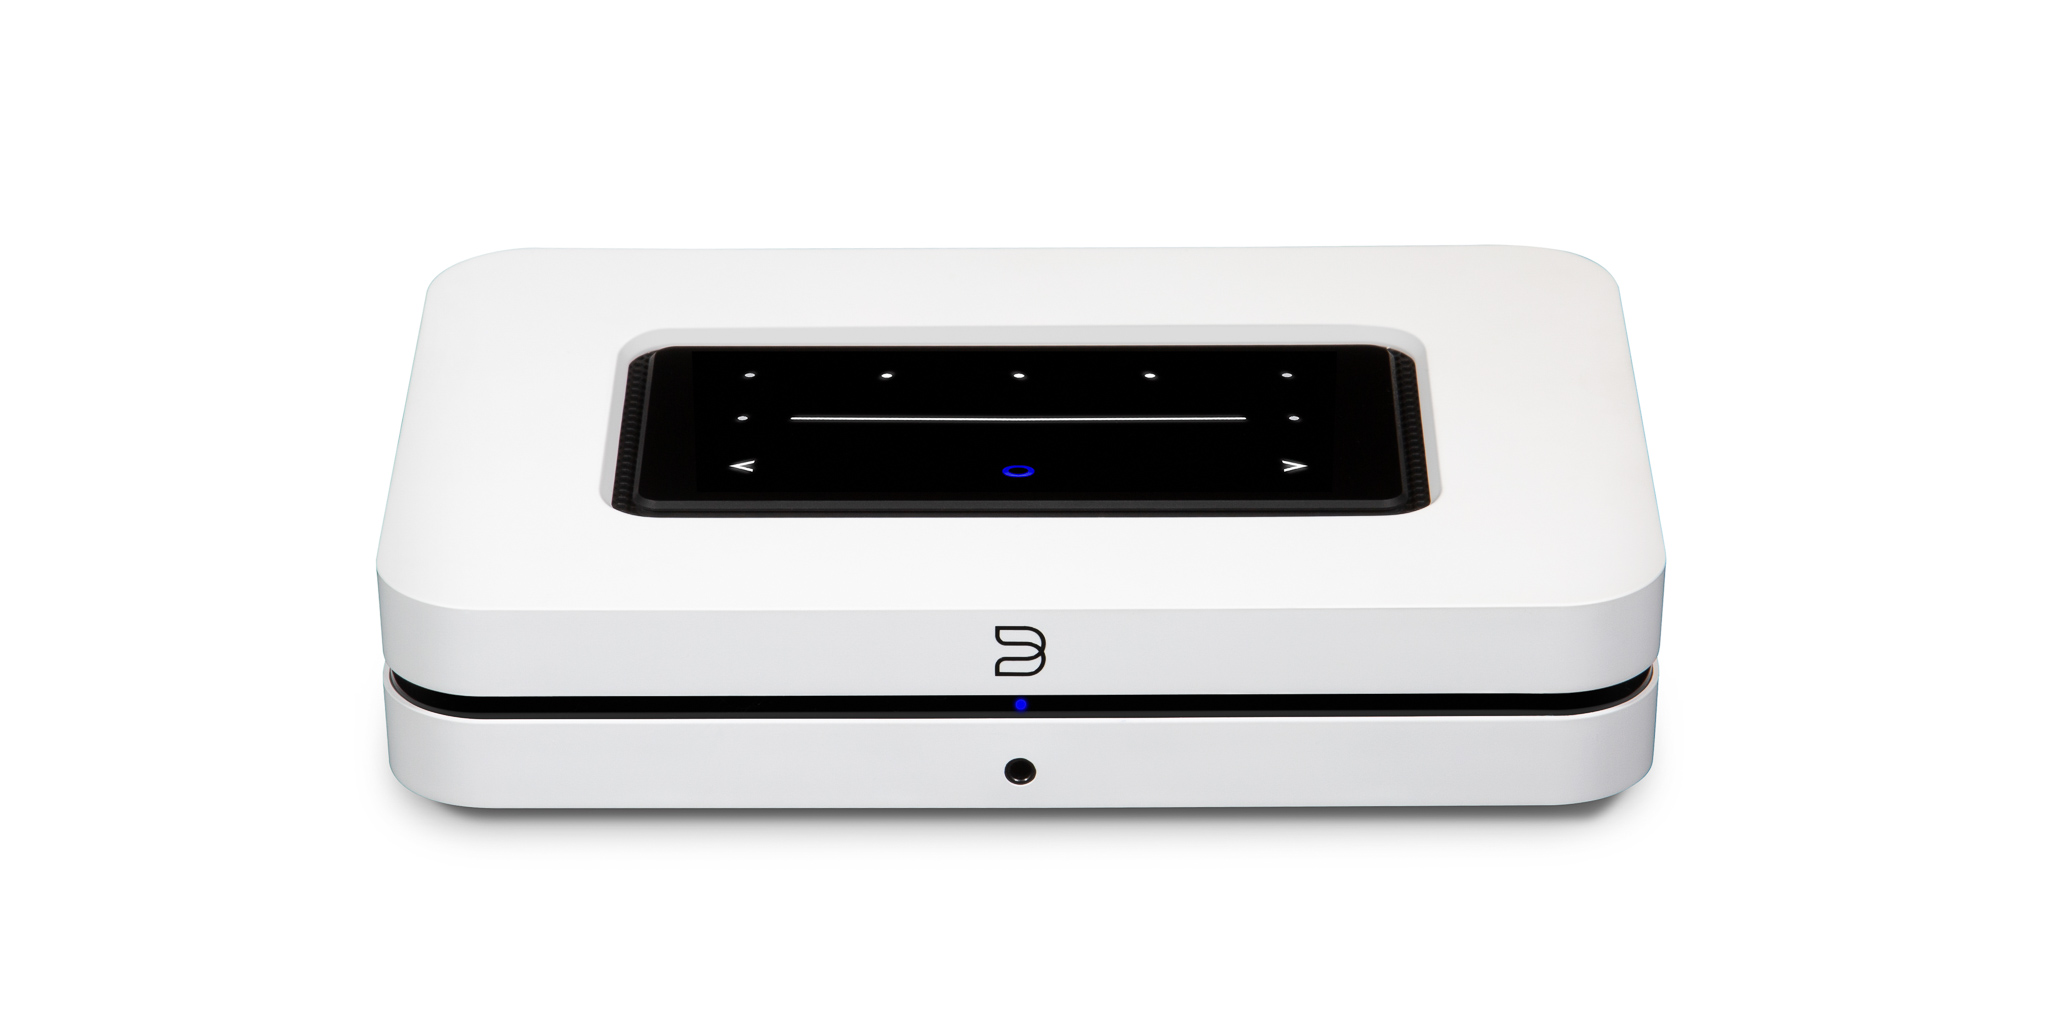 Bluesound NODE verkkosoitin (N130) BluOS striimeri, HDMI (eArc) liitäntä televisiolle, Airplay 2 tuki, kaksisuuntainen Bluetooth